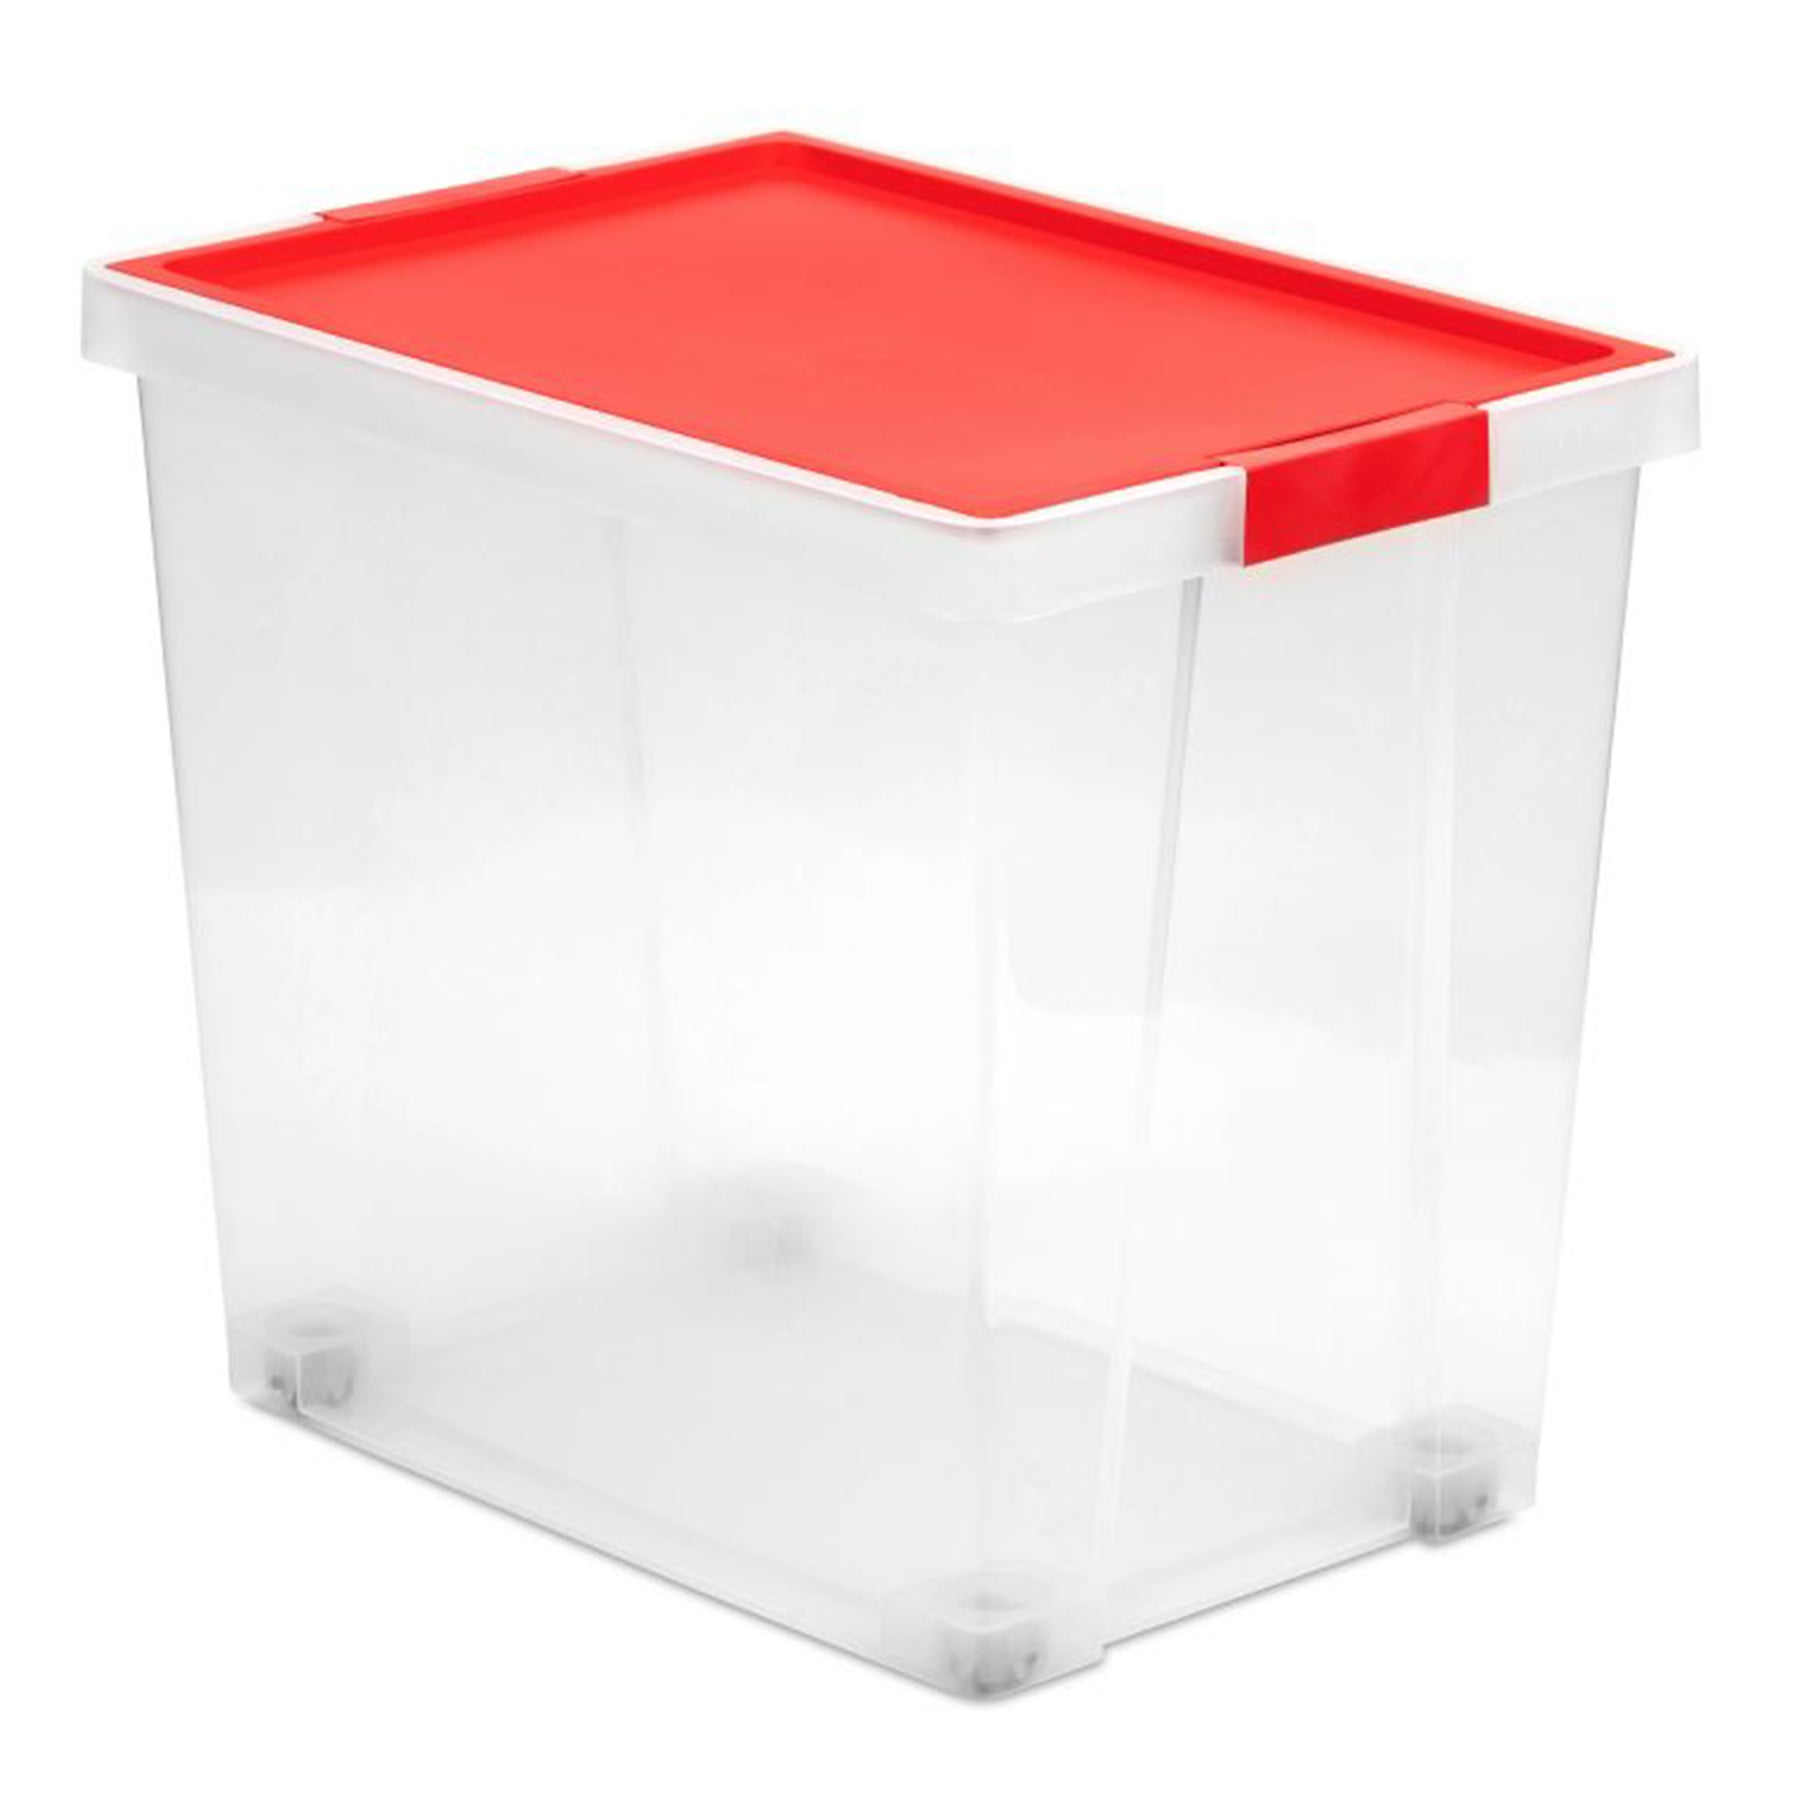 Storage box - blue/red